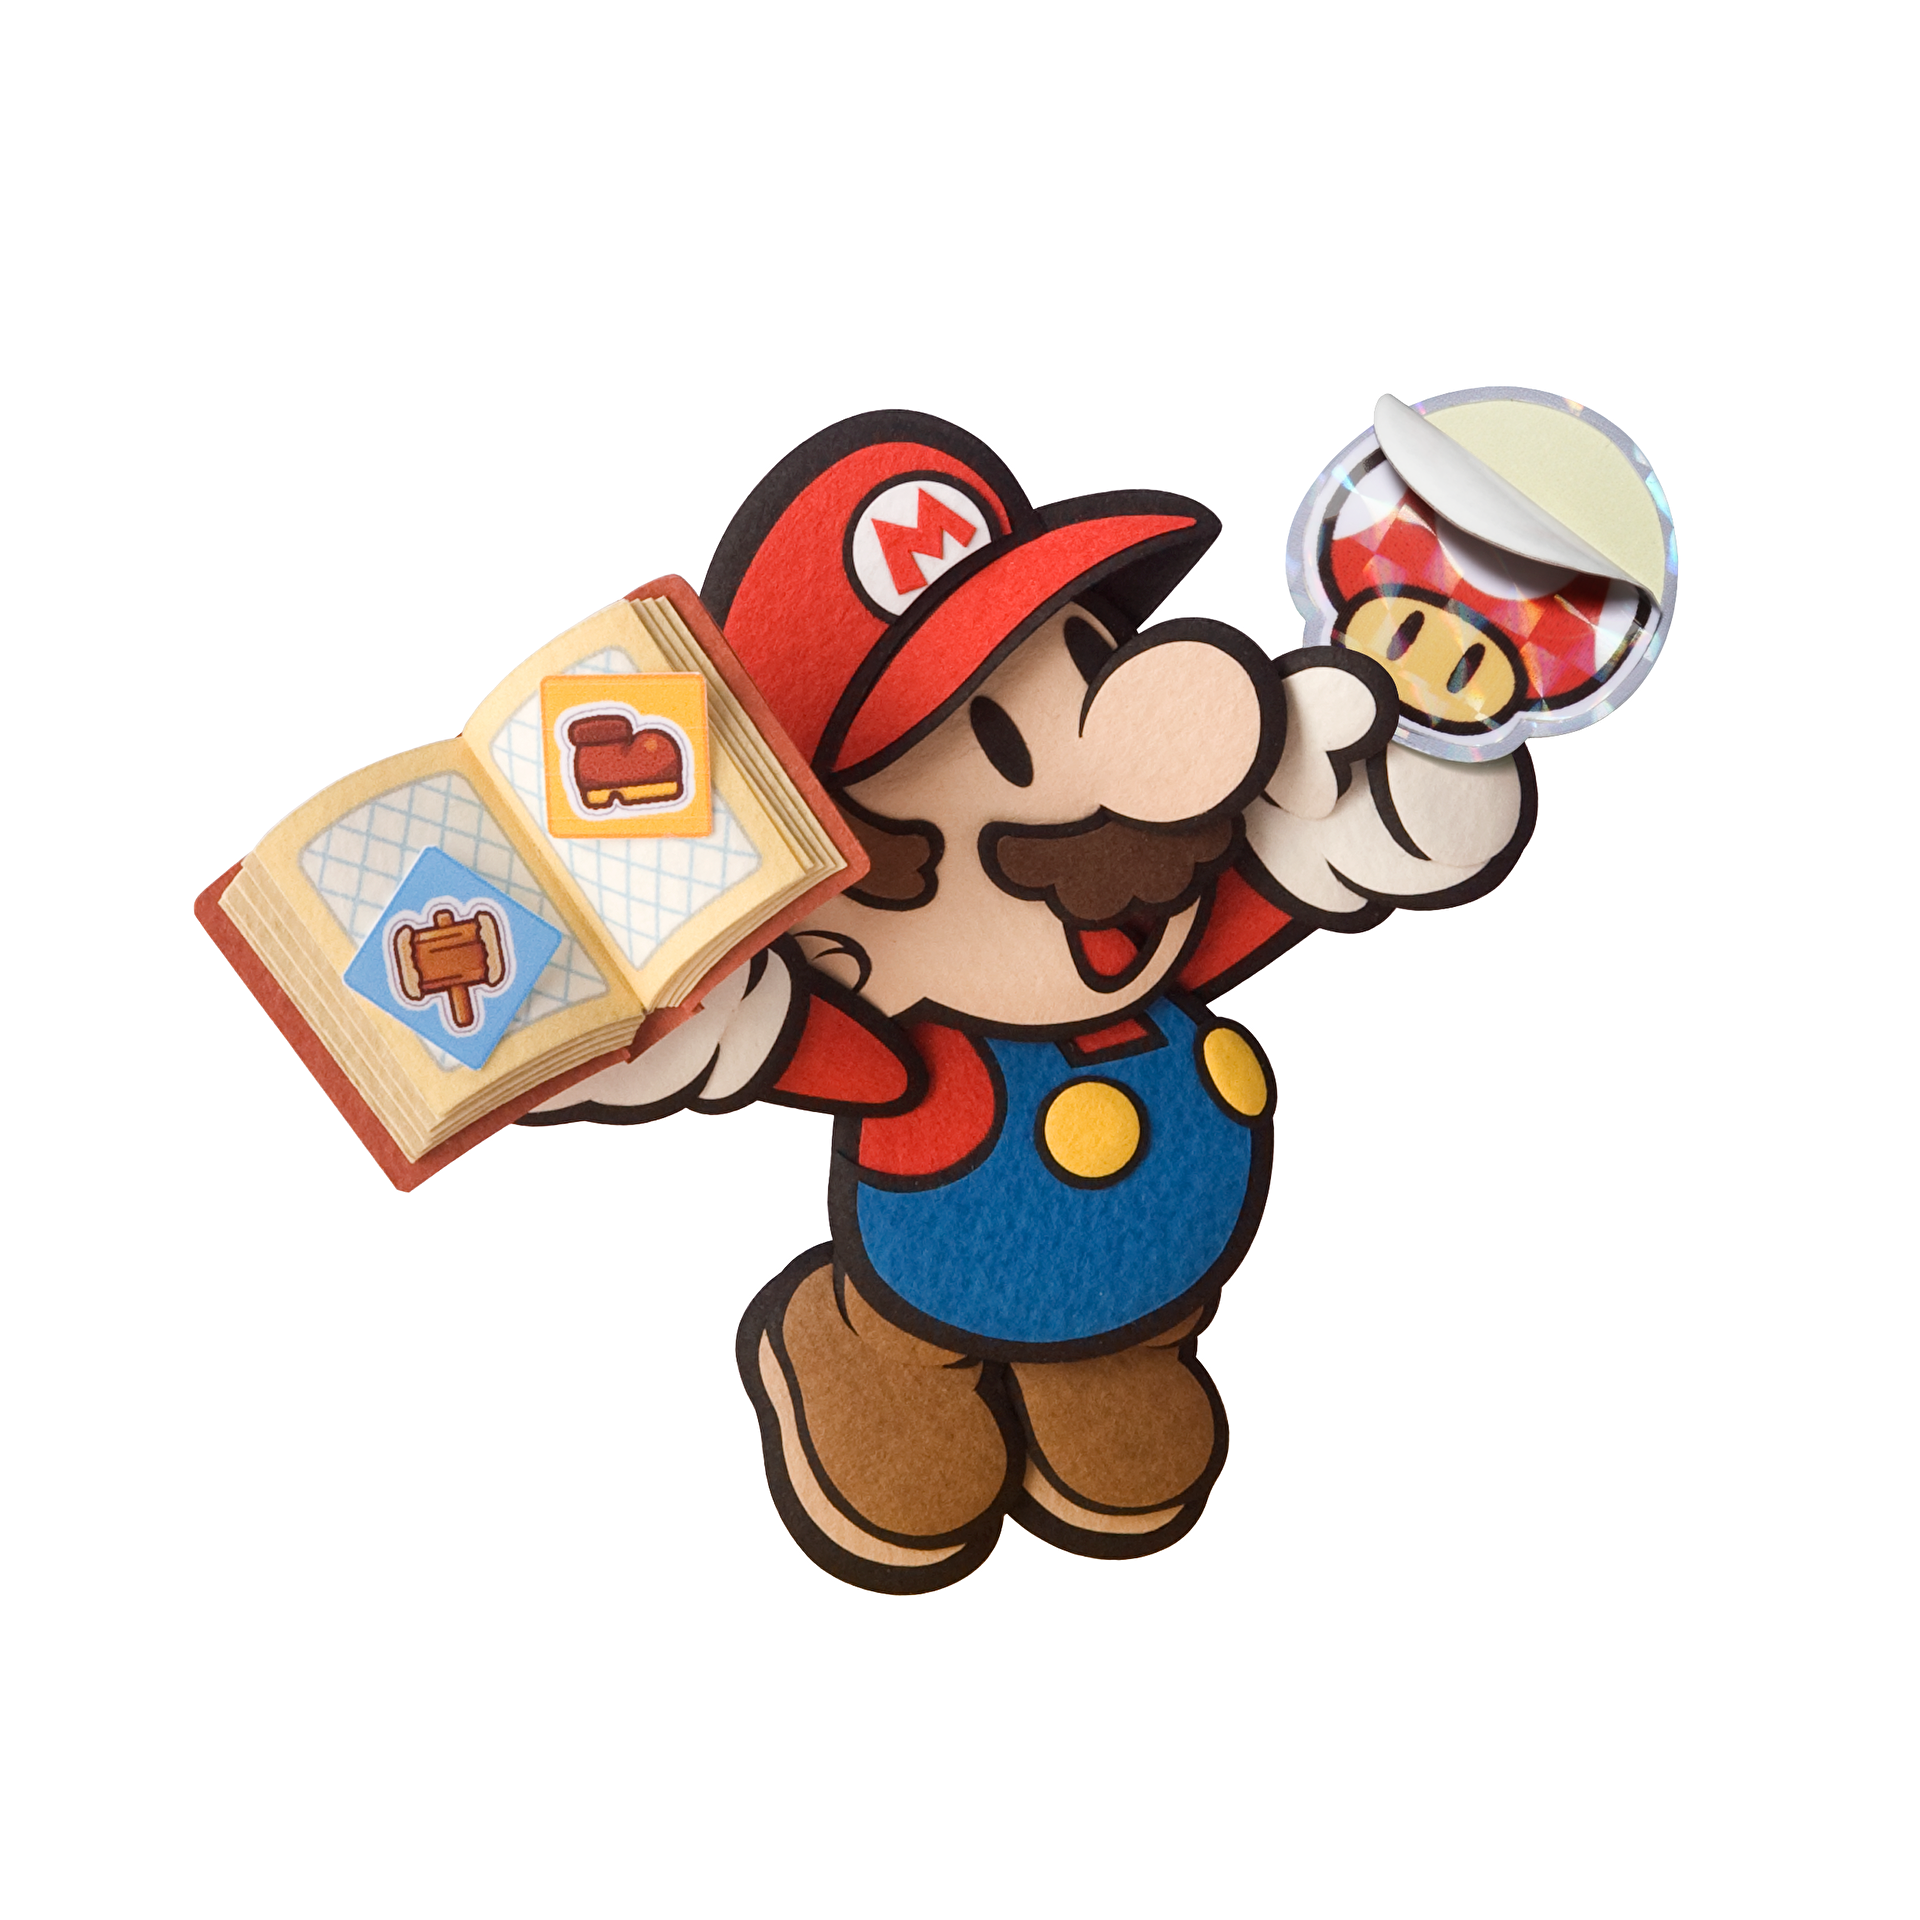 Paper Mario: Sticker Star Review - Review - Nintendo